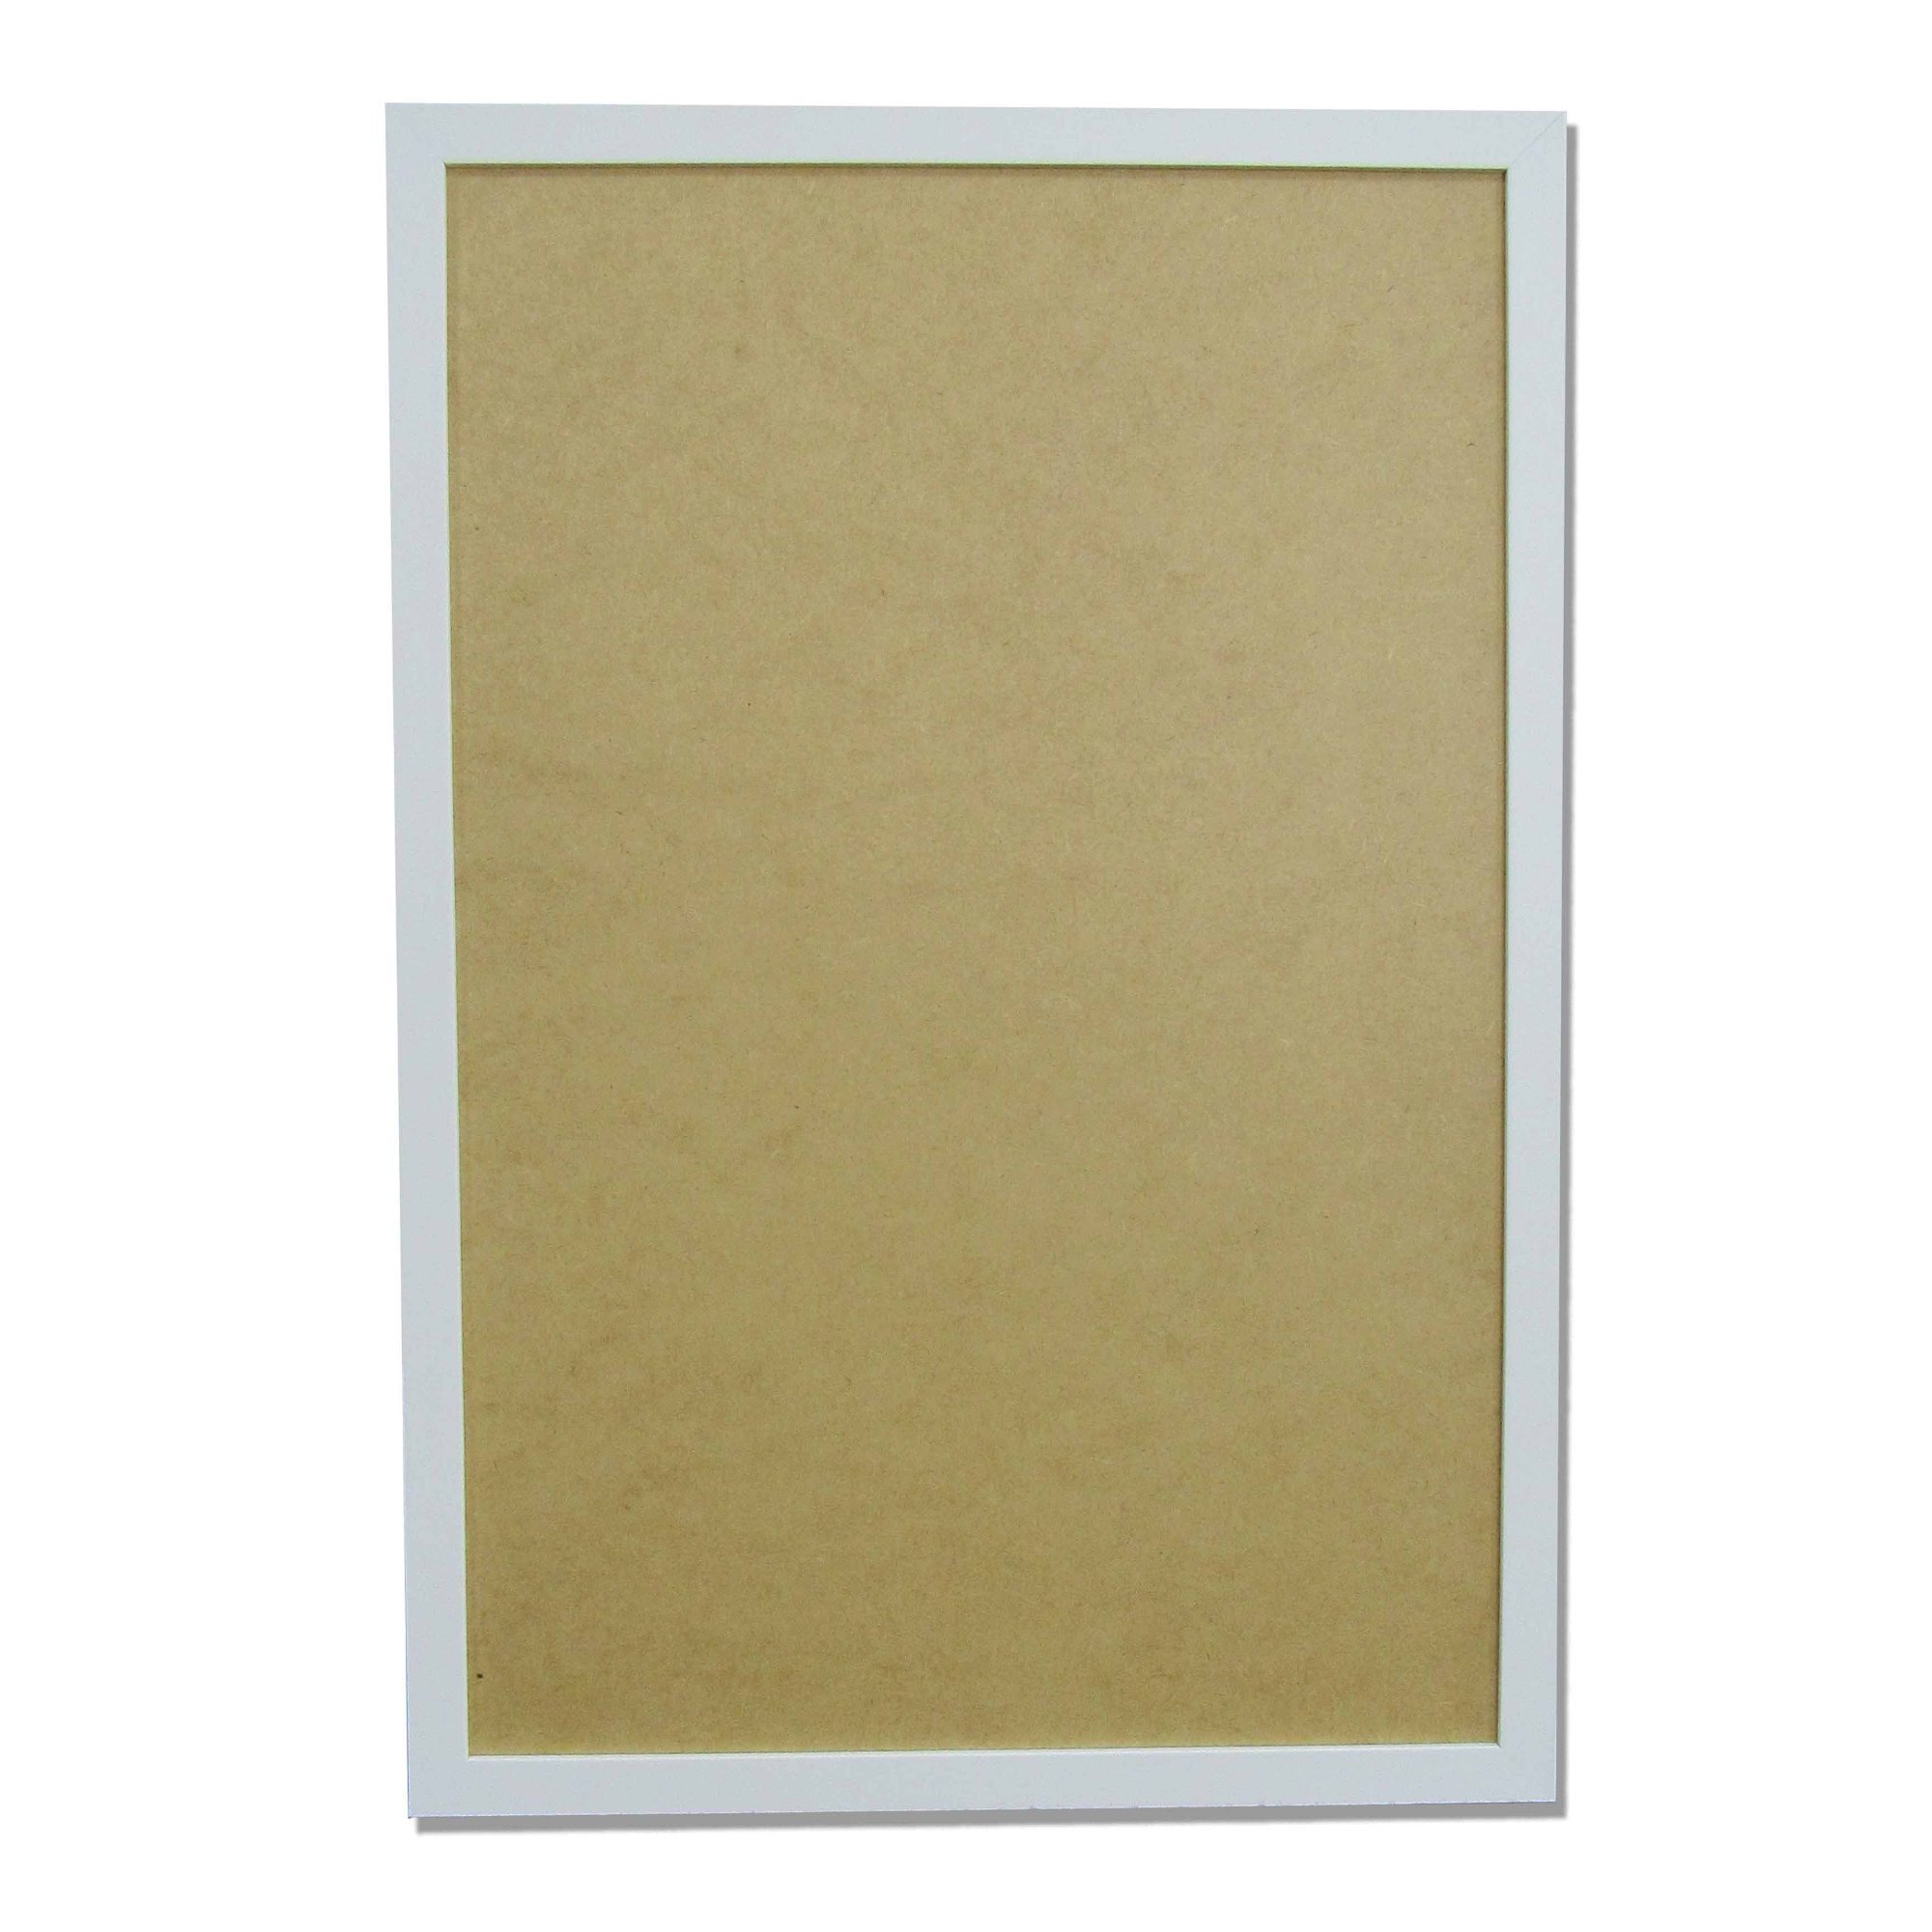 Moldura Quadro A4 21x30cm Diploma Certificado Foto sem Vidro Empório do Adesivo Moldura Branca 10 Un